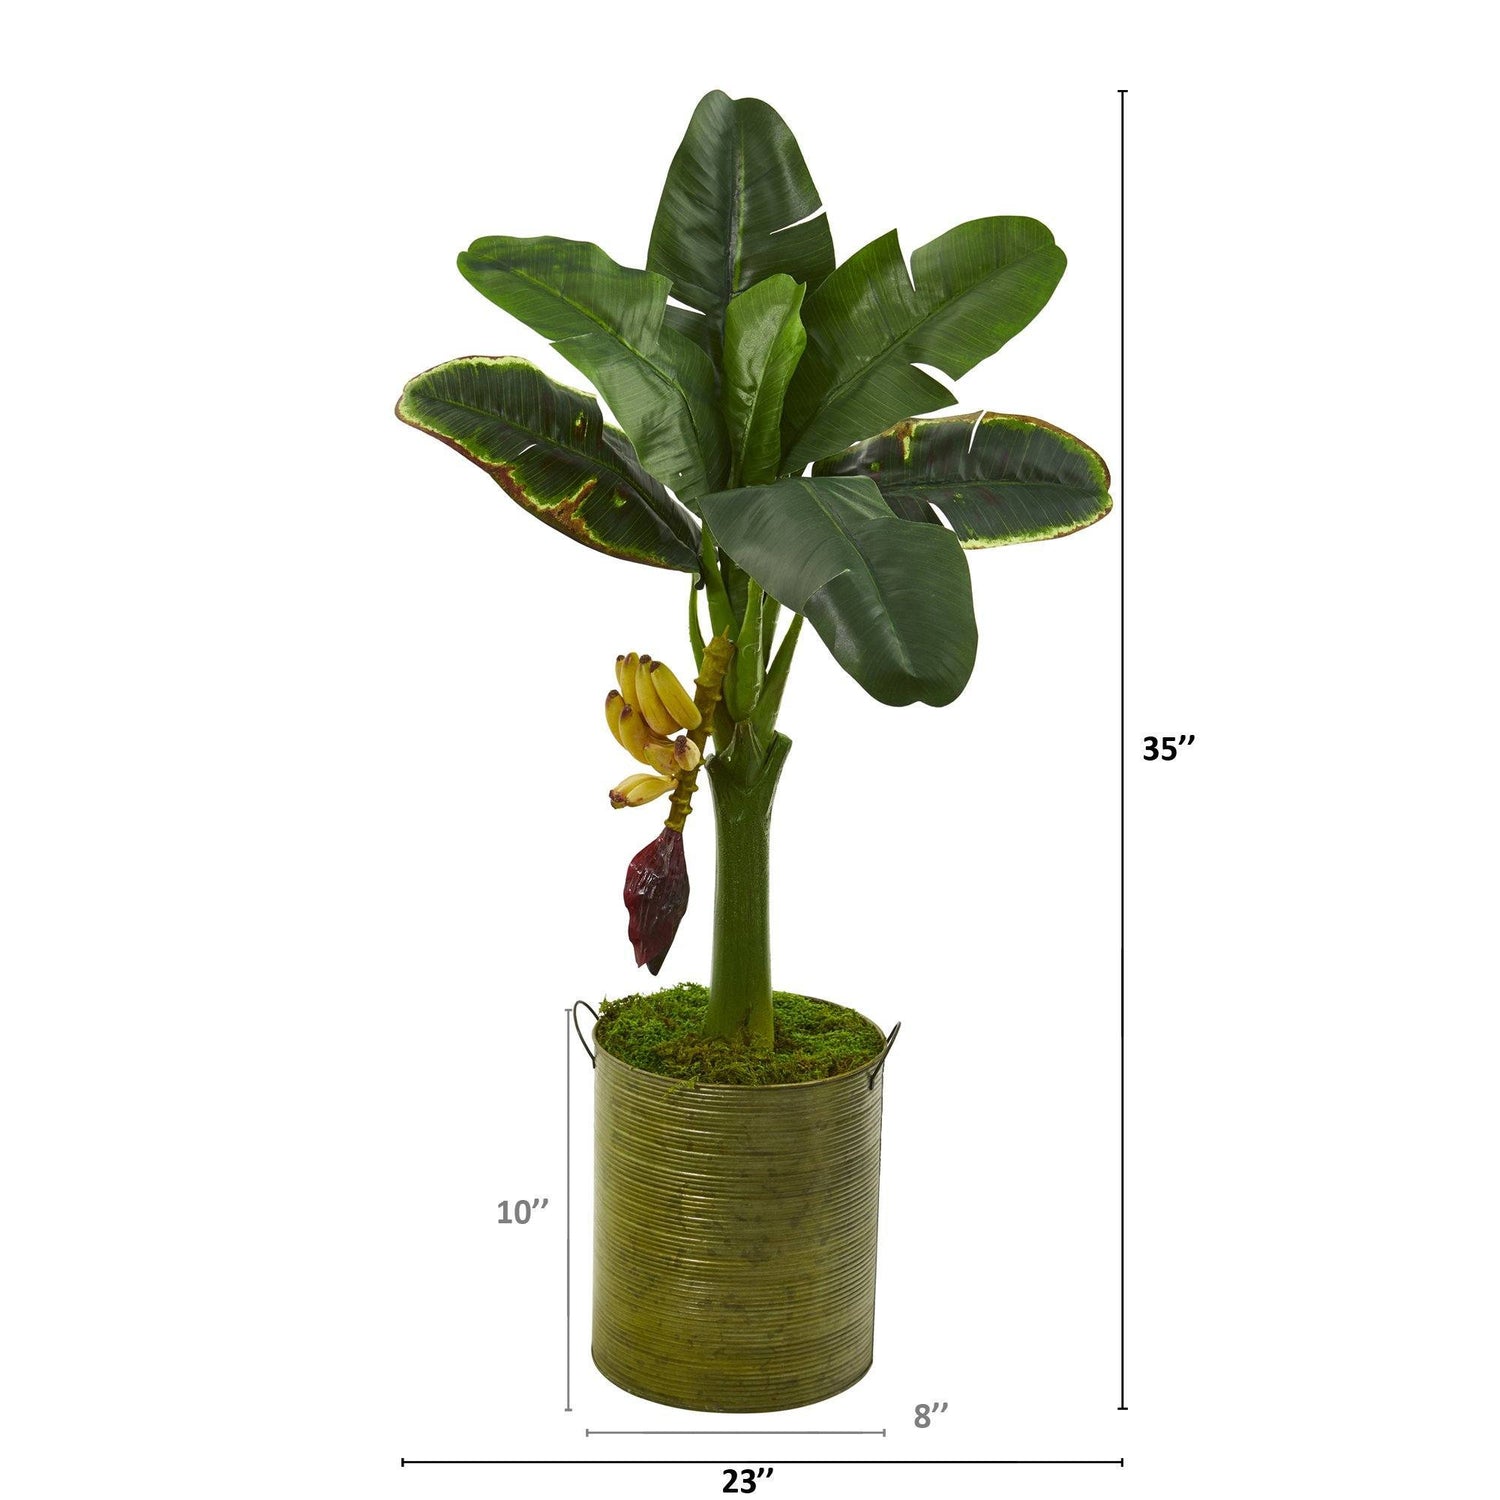 35” Banana Artificial Tree in Green Planter